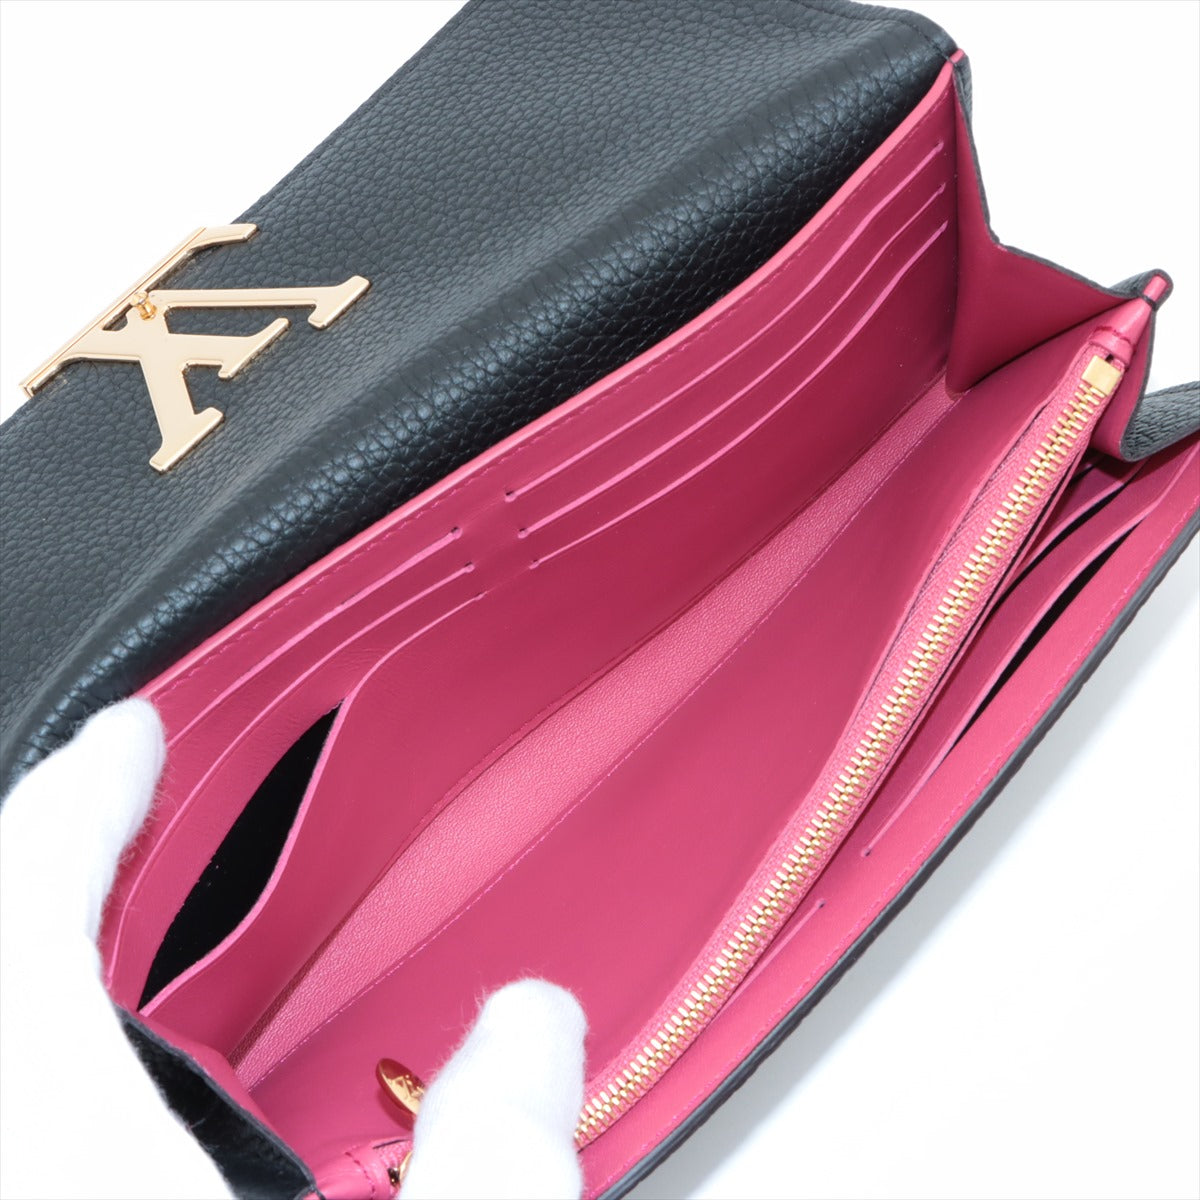 Louis Vuitton Taurillon Portefeuille Capucines M61248 Noir × Hot pink Long Wallet Responsive RFID